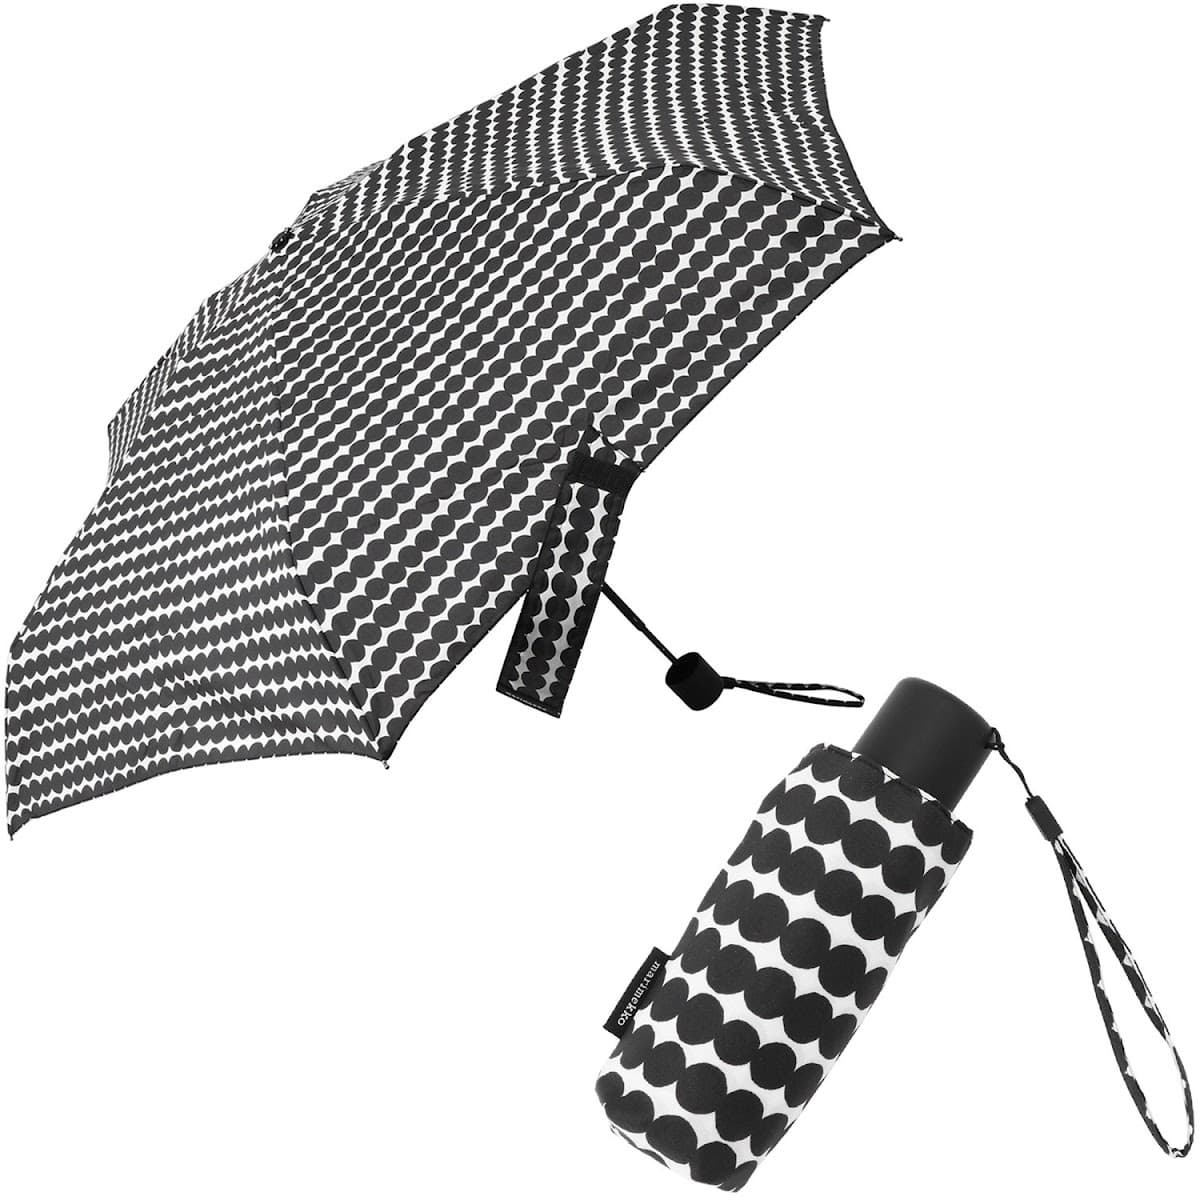  Marimekko зонт marimekko женский унисекс lasi. коврик manual compact складной зонт черный / белый 048860-190